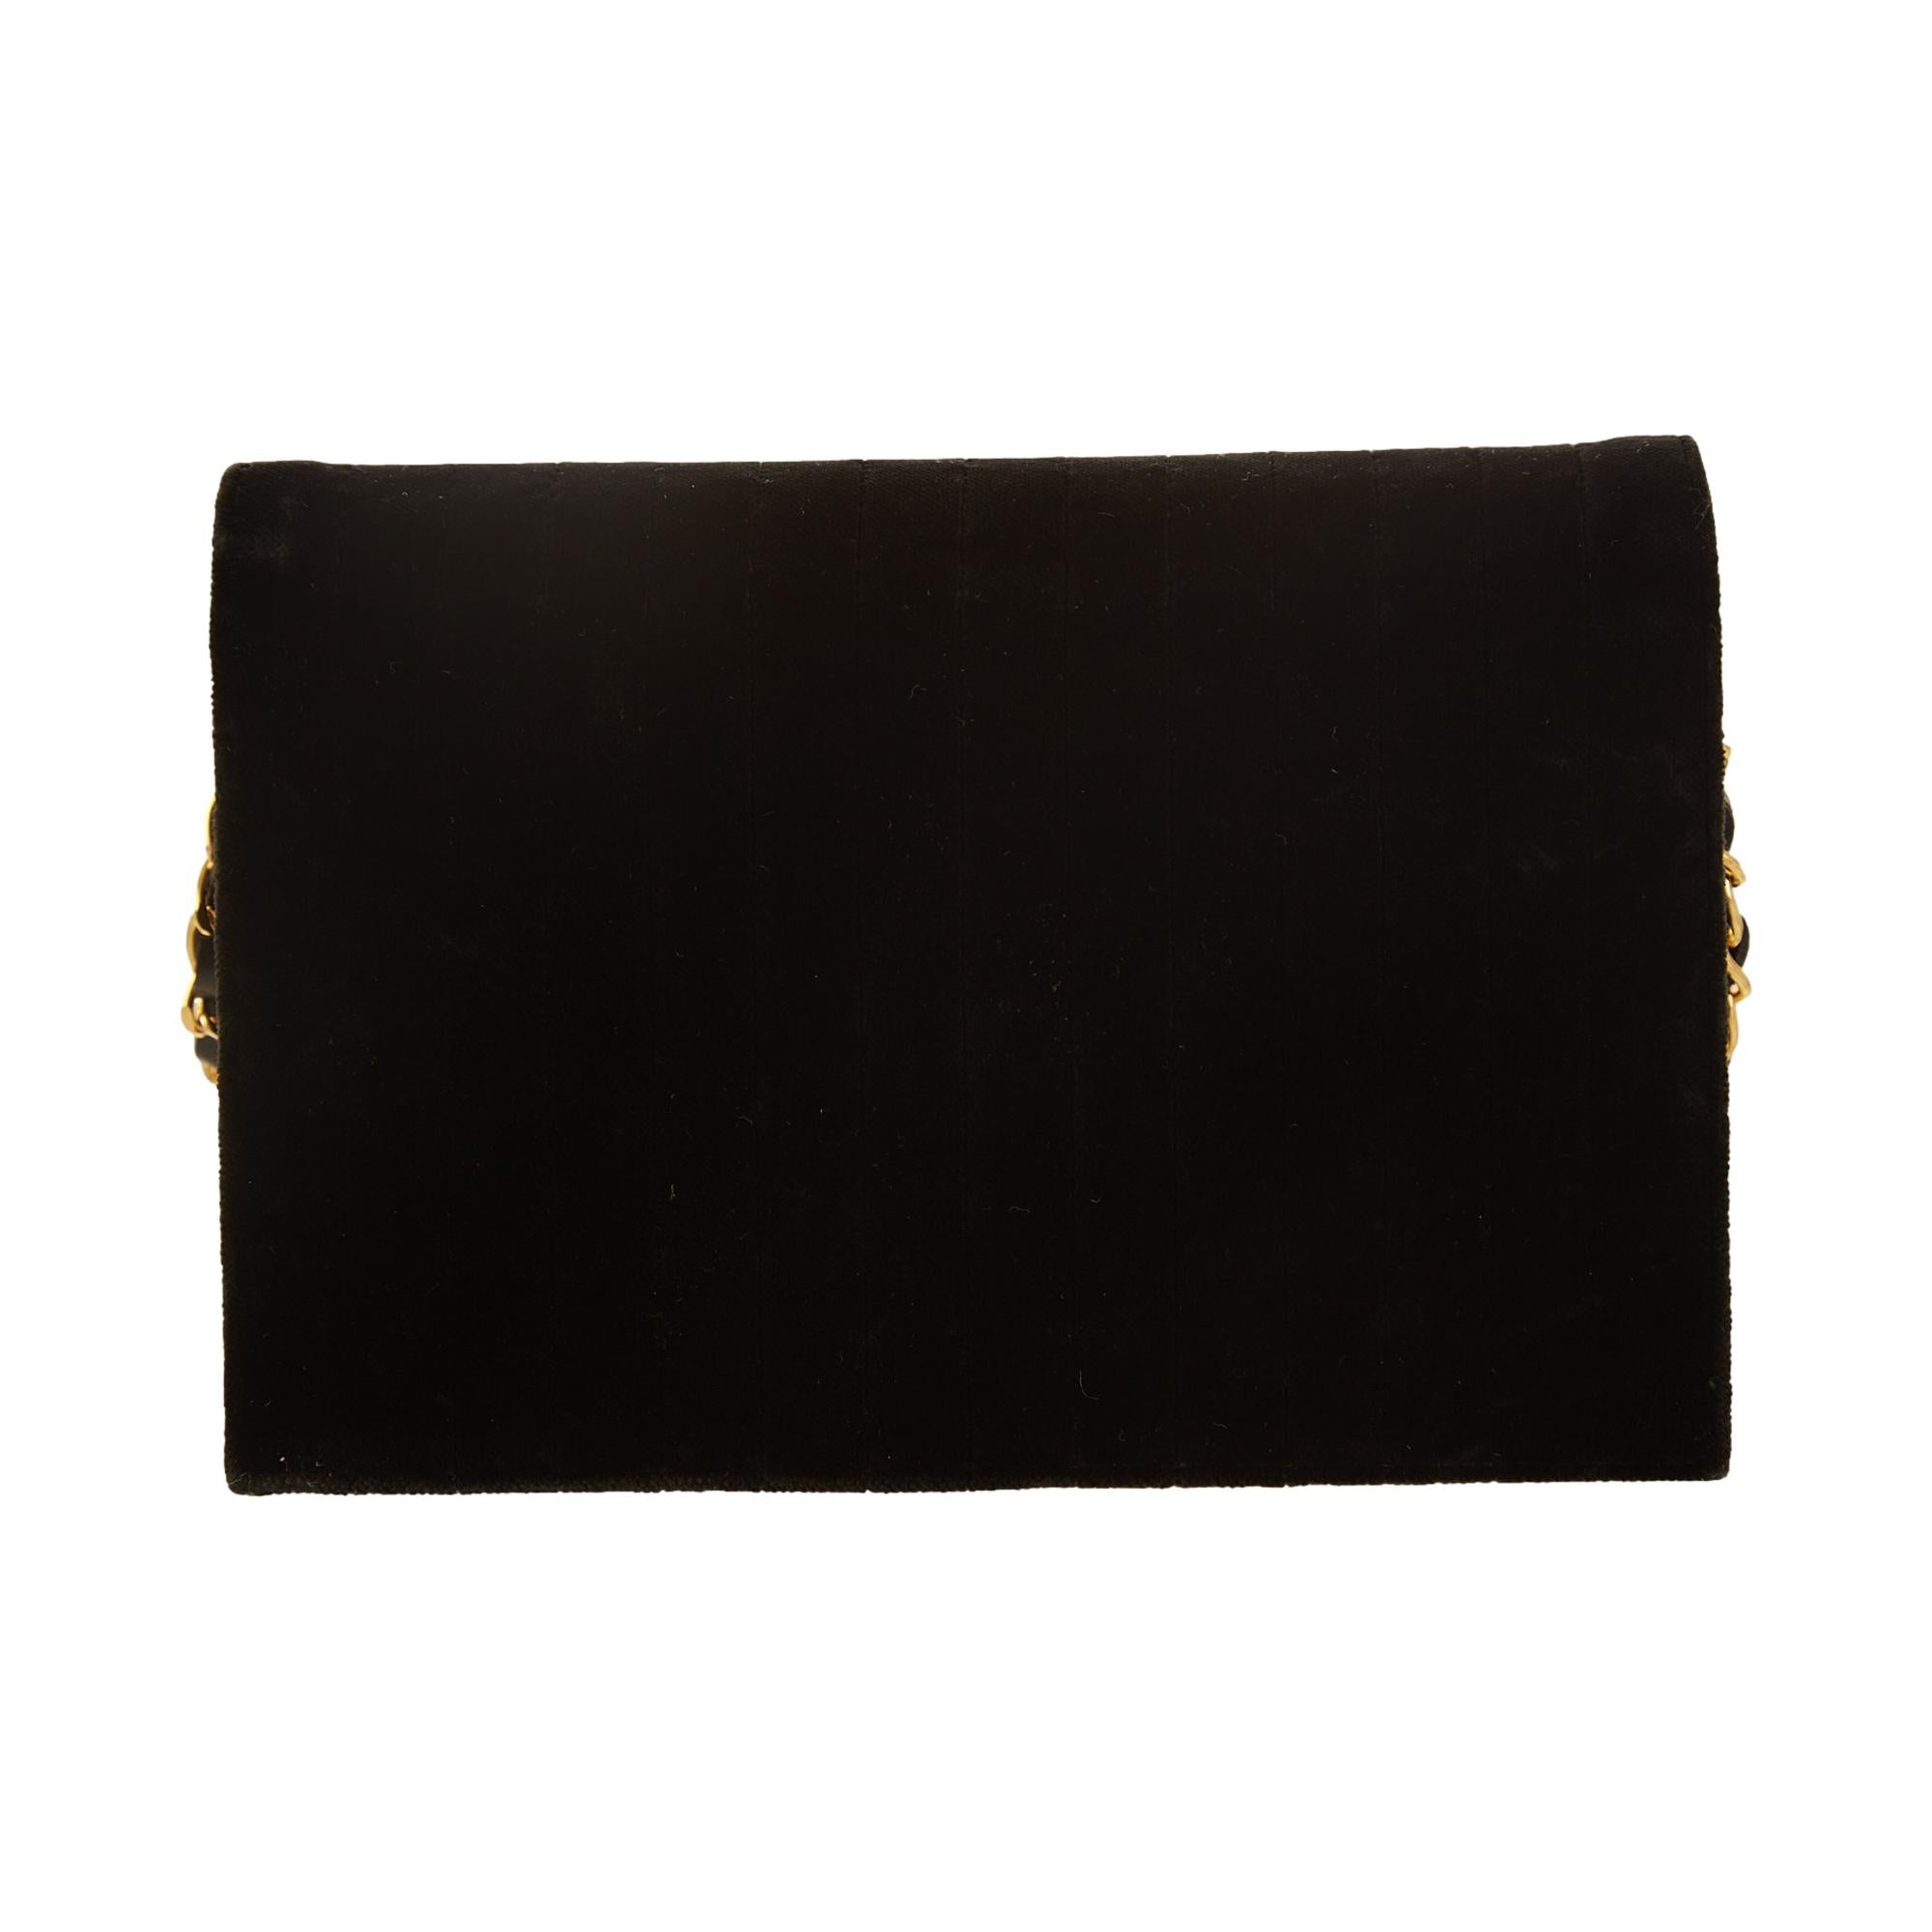 Chanel Black Velet Chain Shoulder Bag